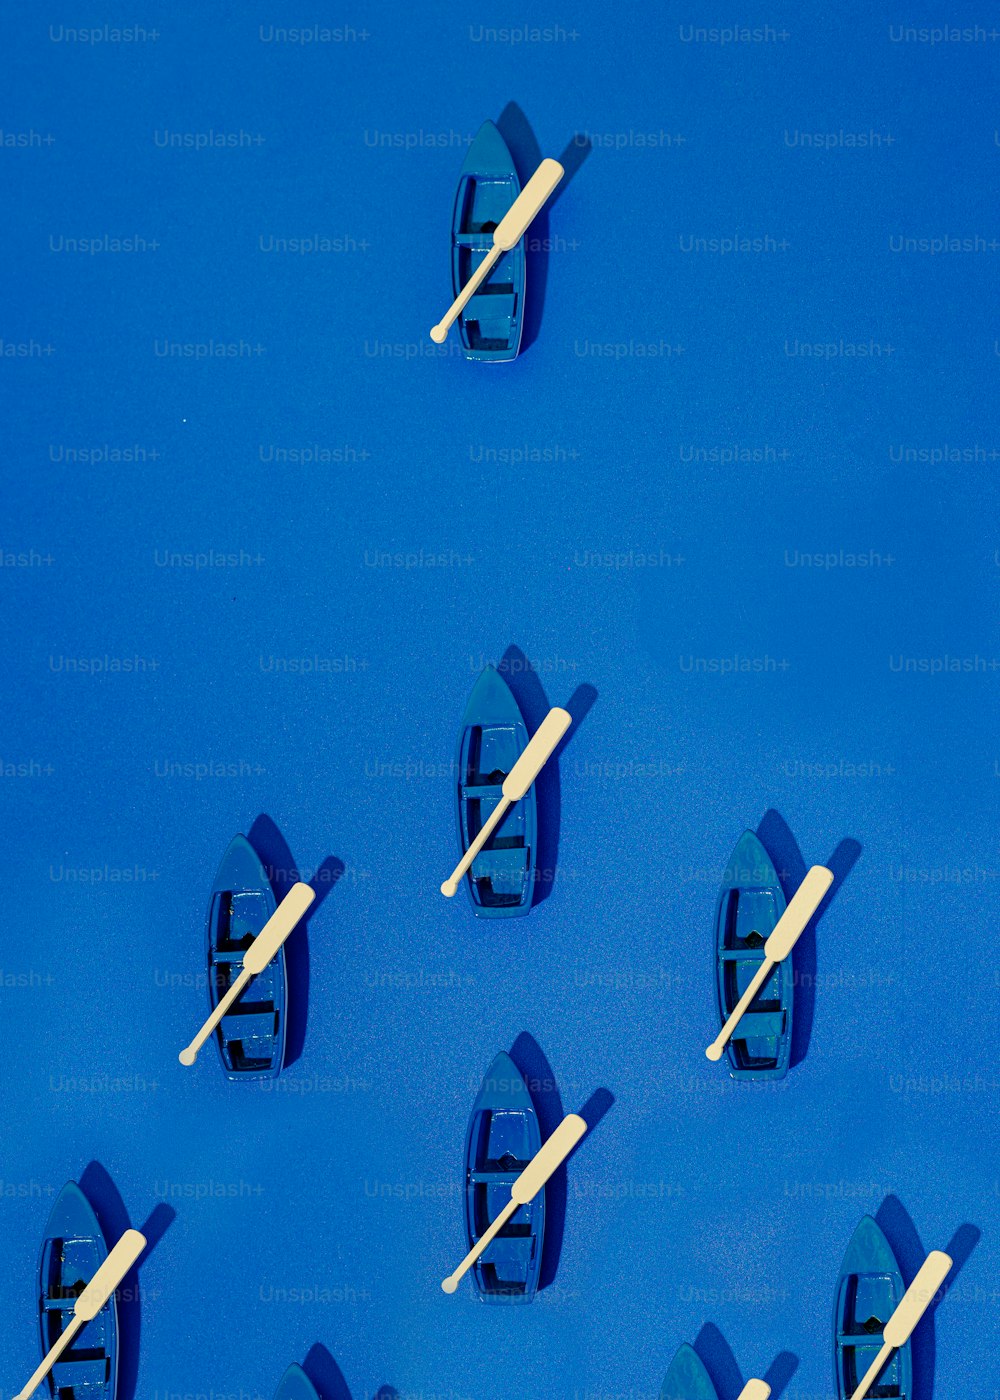 파란 표면 위에 떠 있는 작은 보트 그룹